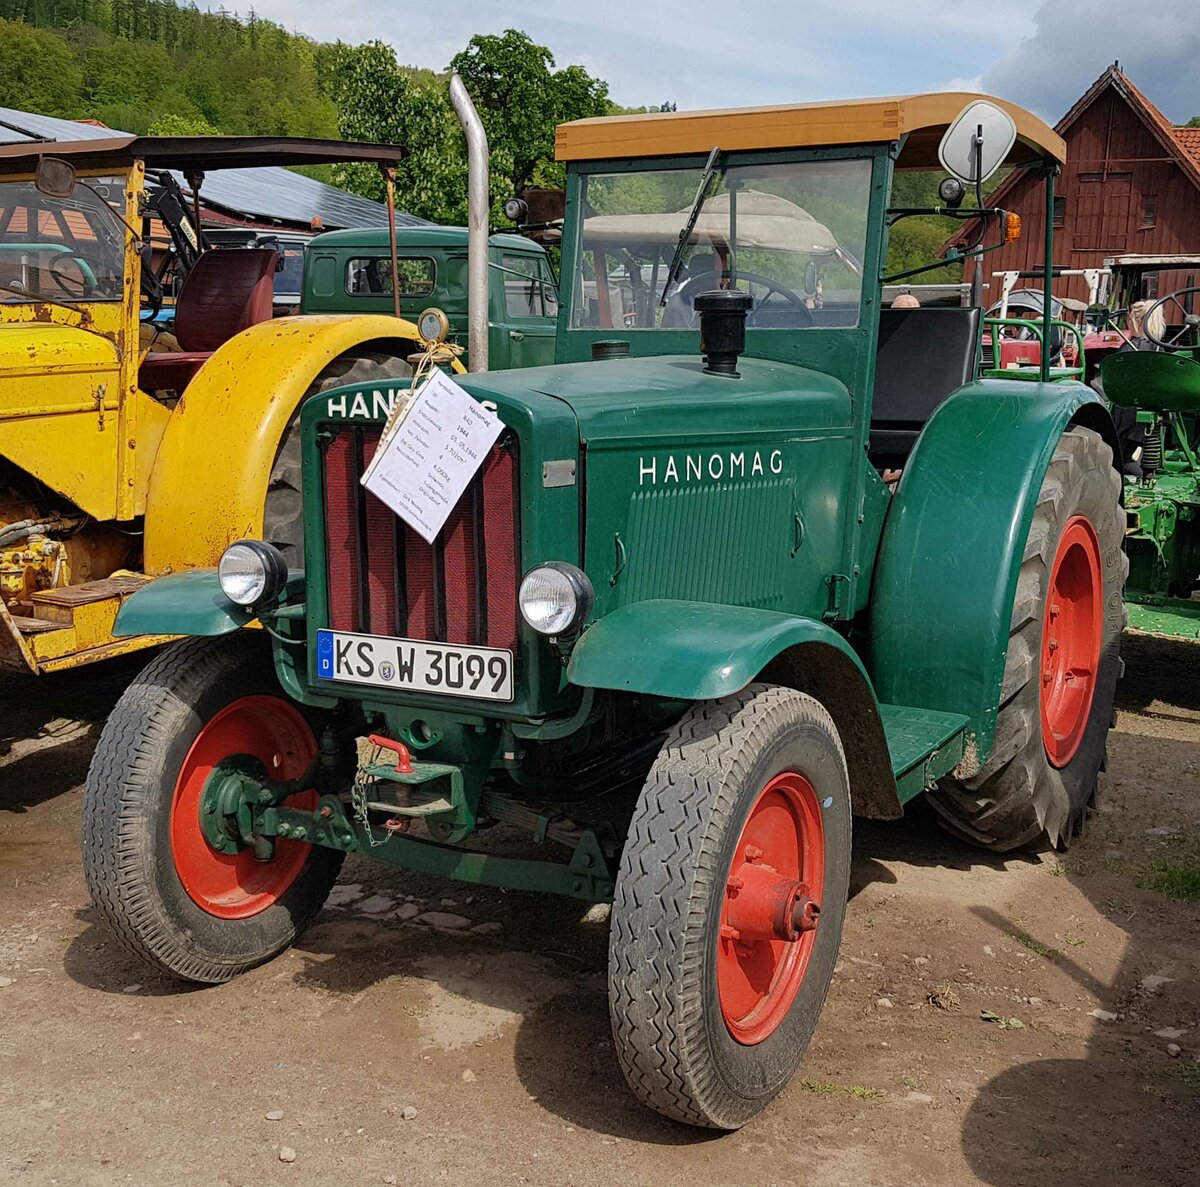 =Hanomag R 40, Bj. 1944, 5702 ccm, 40 PS, gesehen auf dem Ausstellungsgelände der Traktorfreunde Wiershausen am Klostergut Hilwartshausen, 05-2023